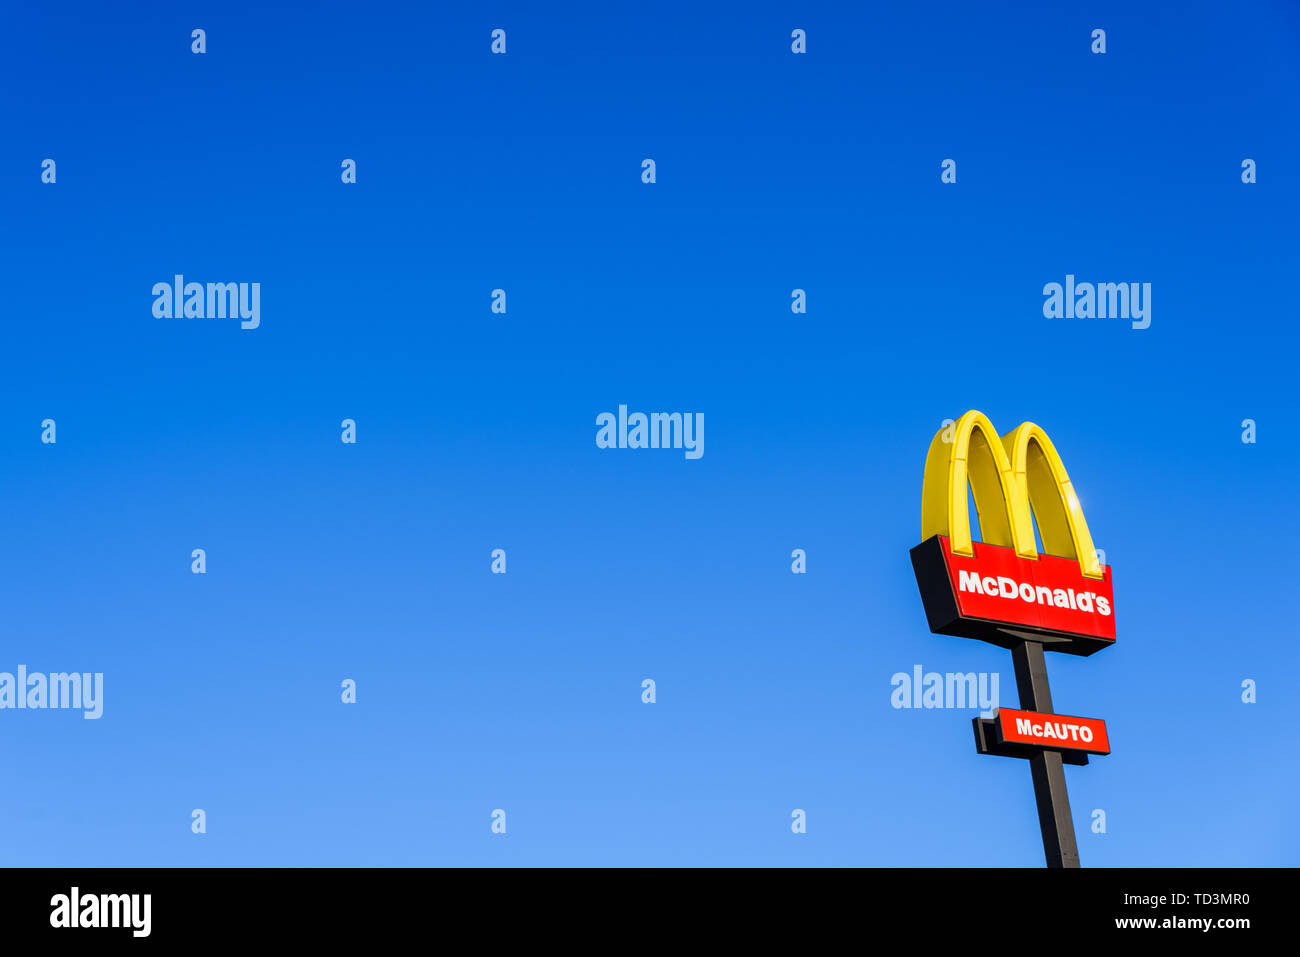 Valencia, Espagne - 29 mai 2019 : Affiche publicitaire de McDonald's restaurant en Espagne, la marque visible de l'autoroute. Banque D'Images